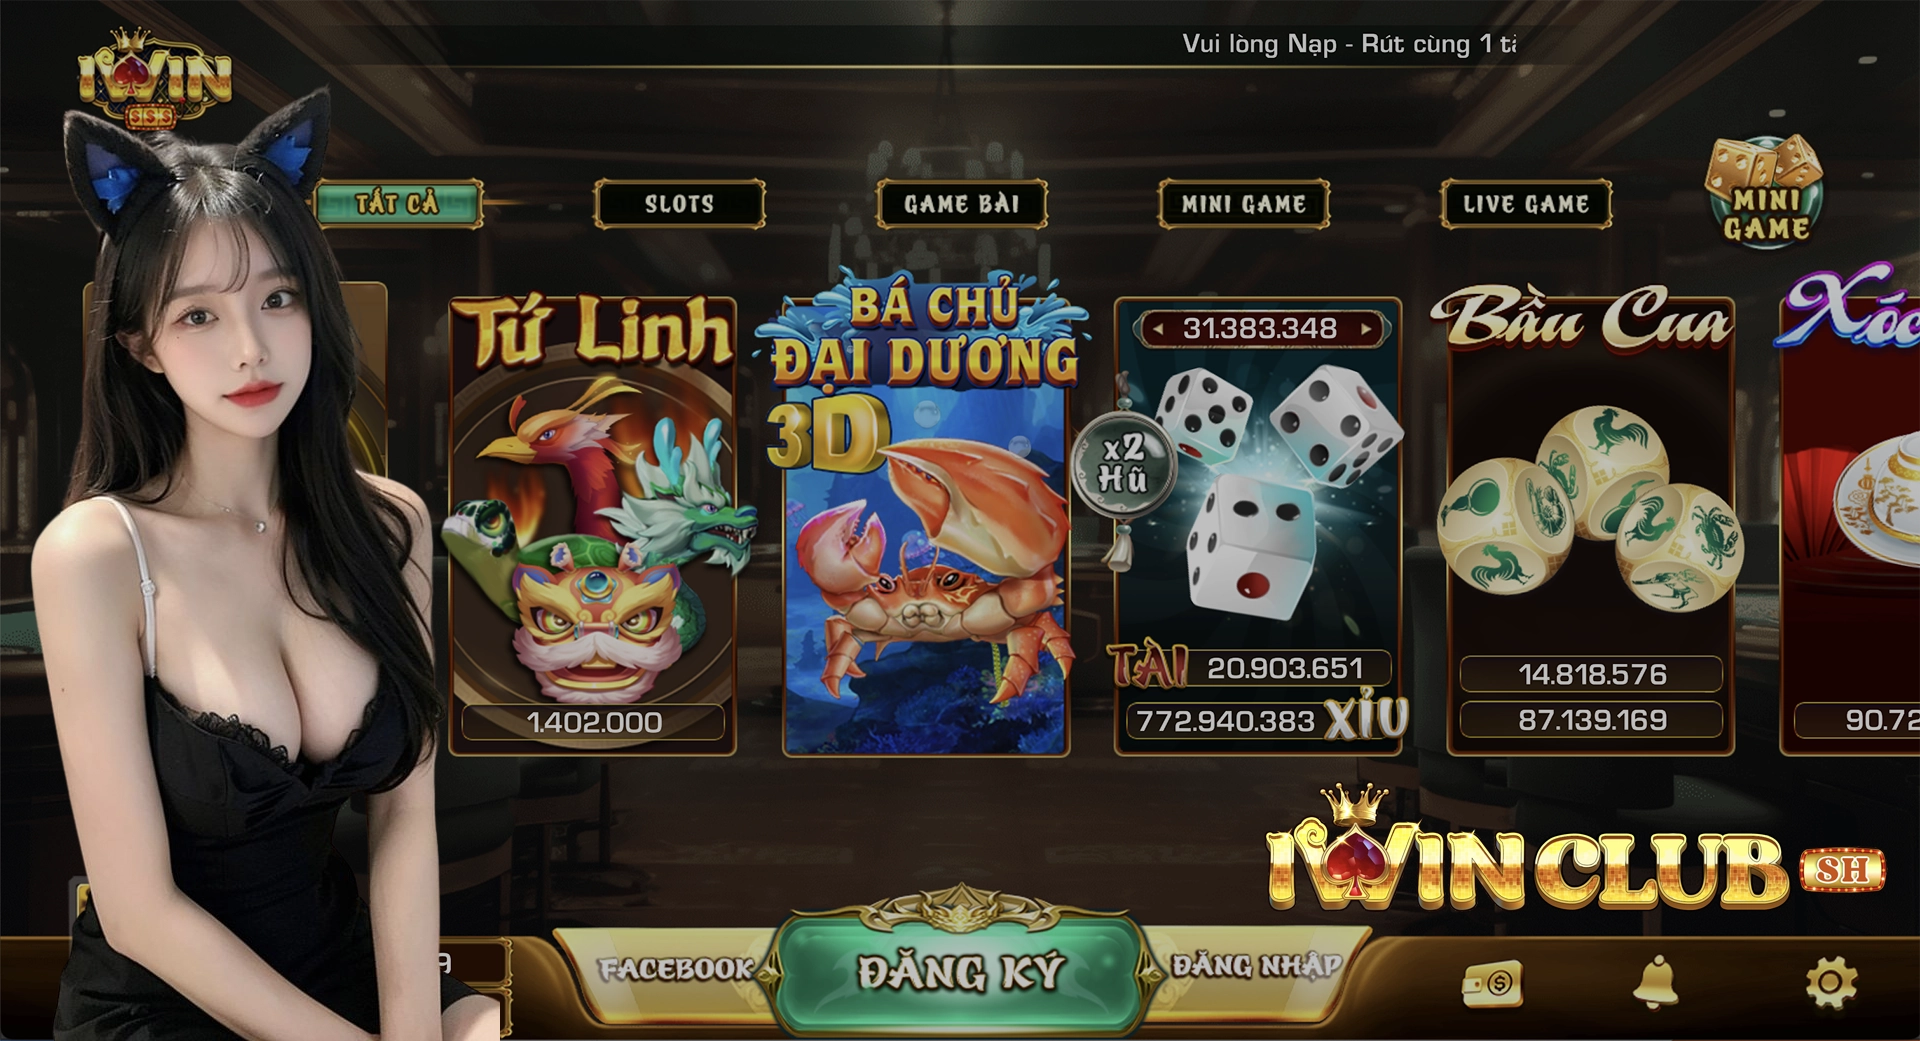 iWin Club - Game bài đổi thưởng uy tín hàng đầu Việt Nam